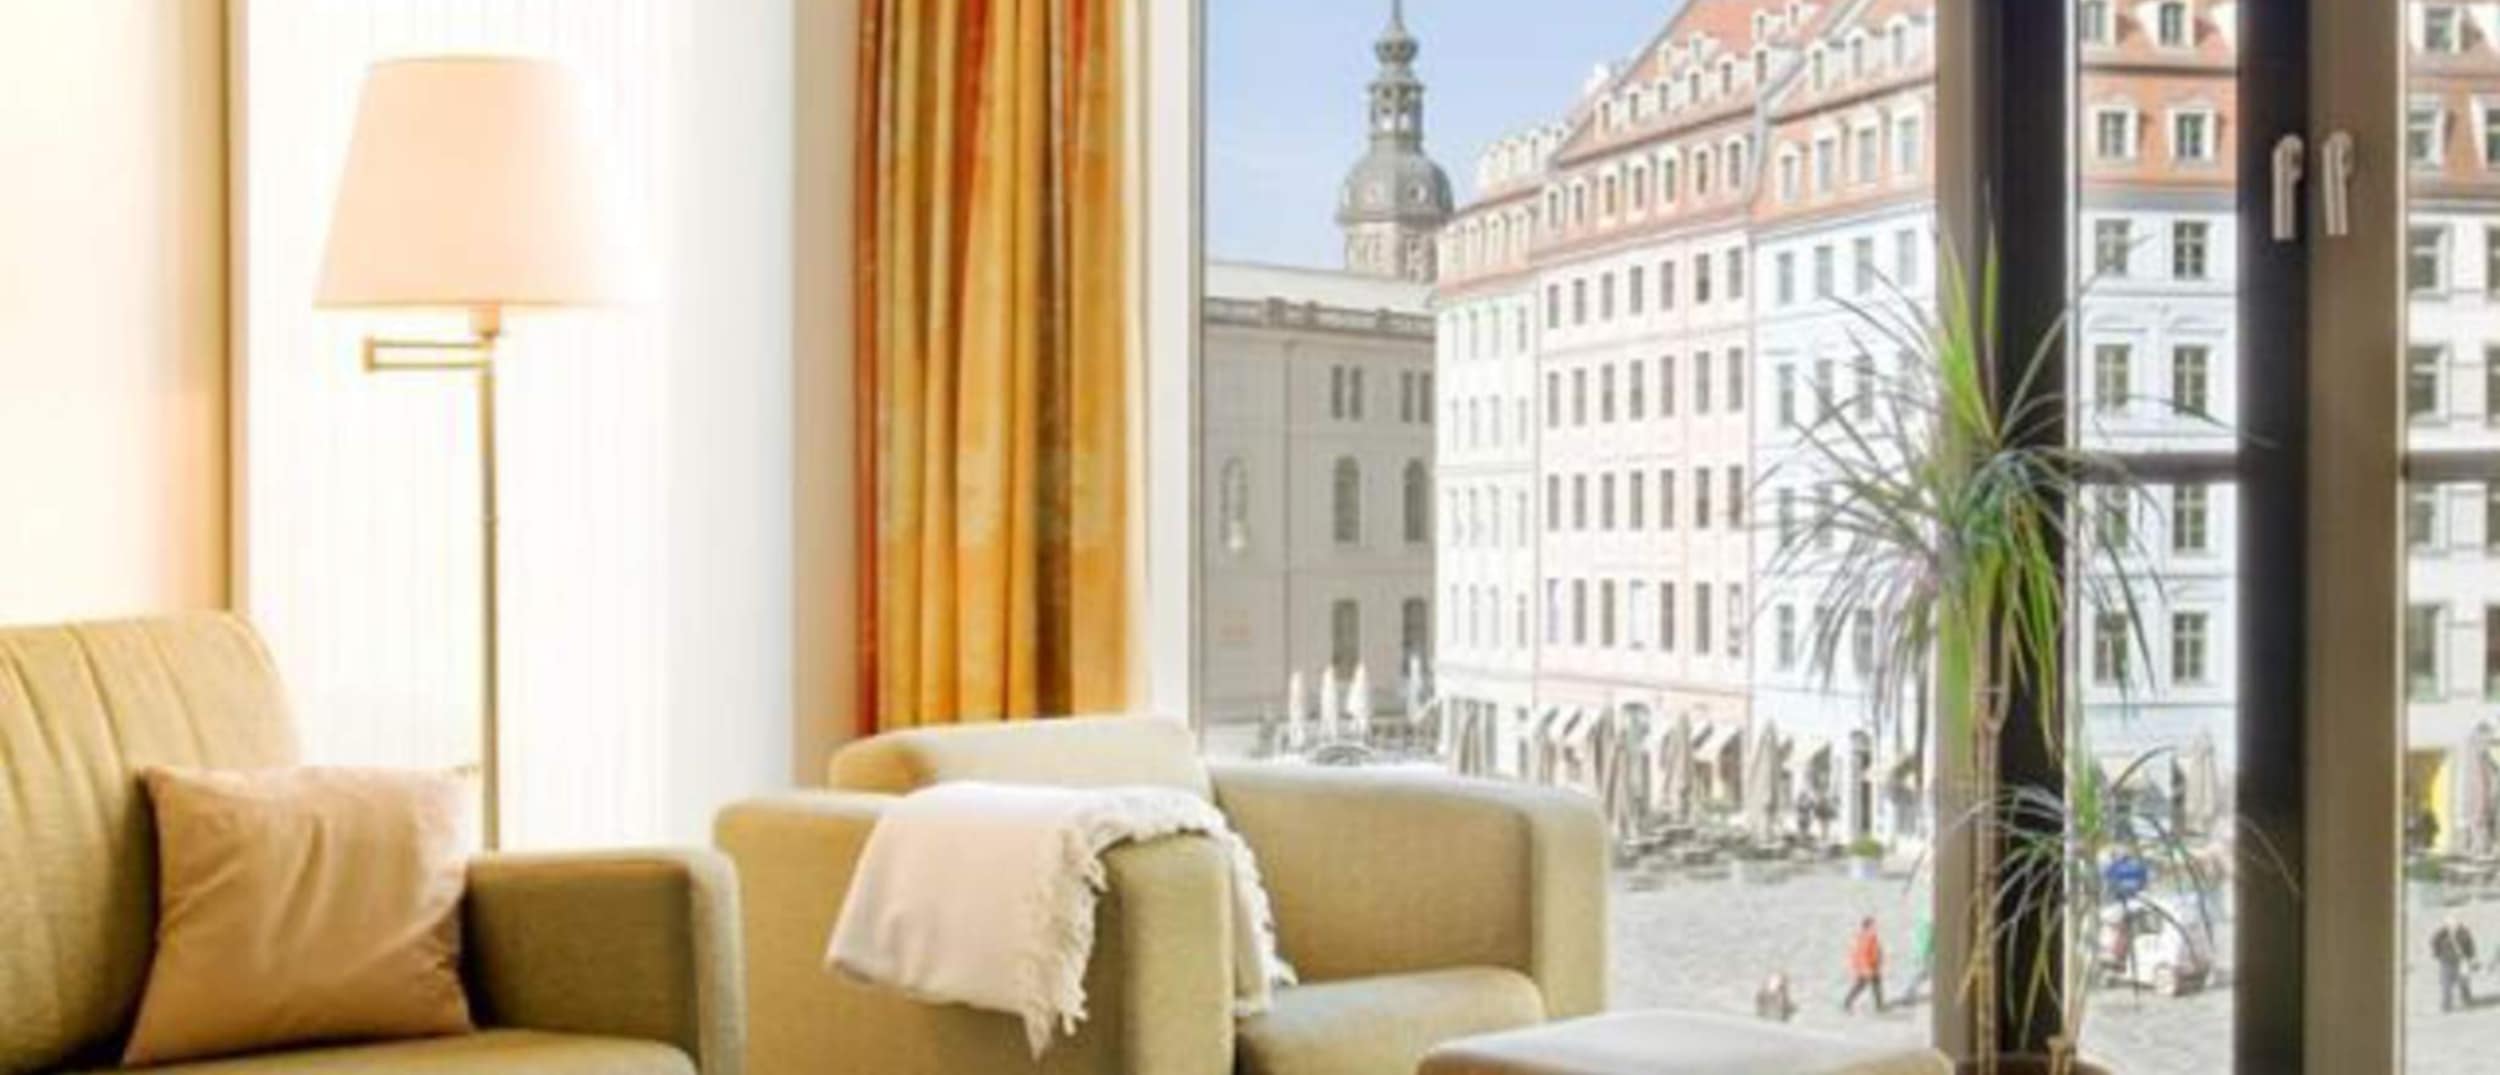 Kultur und Sightseeing in einer Ferienwohnung in Dresden